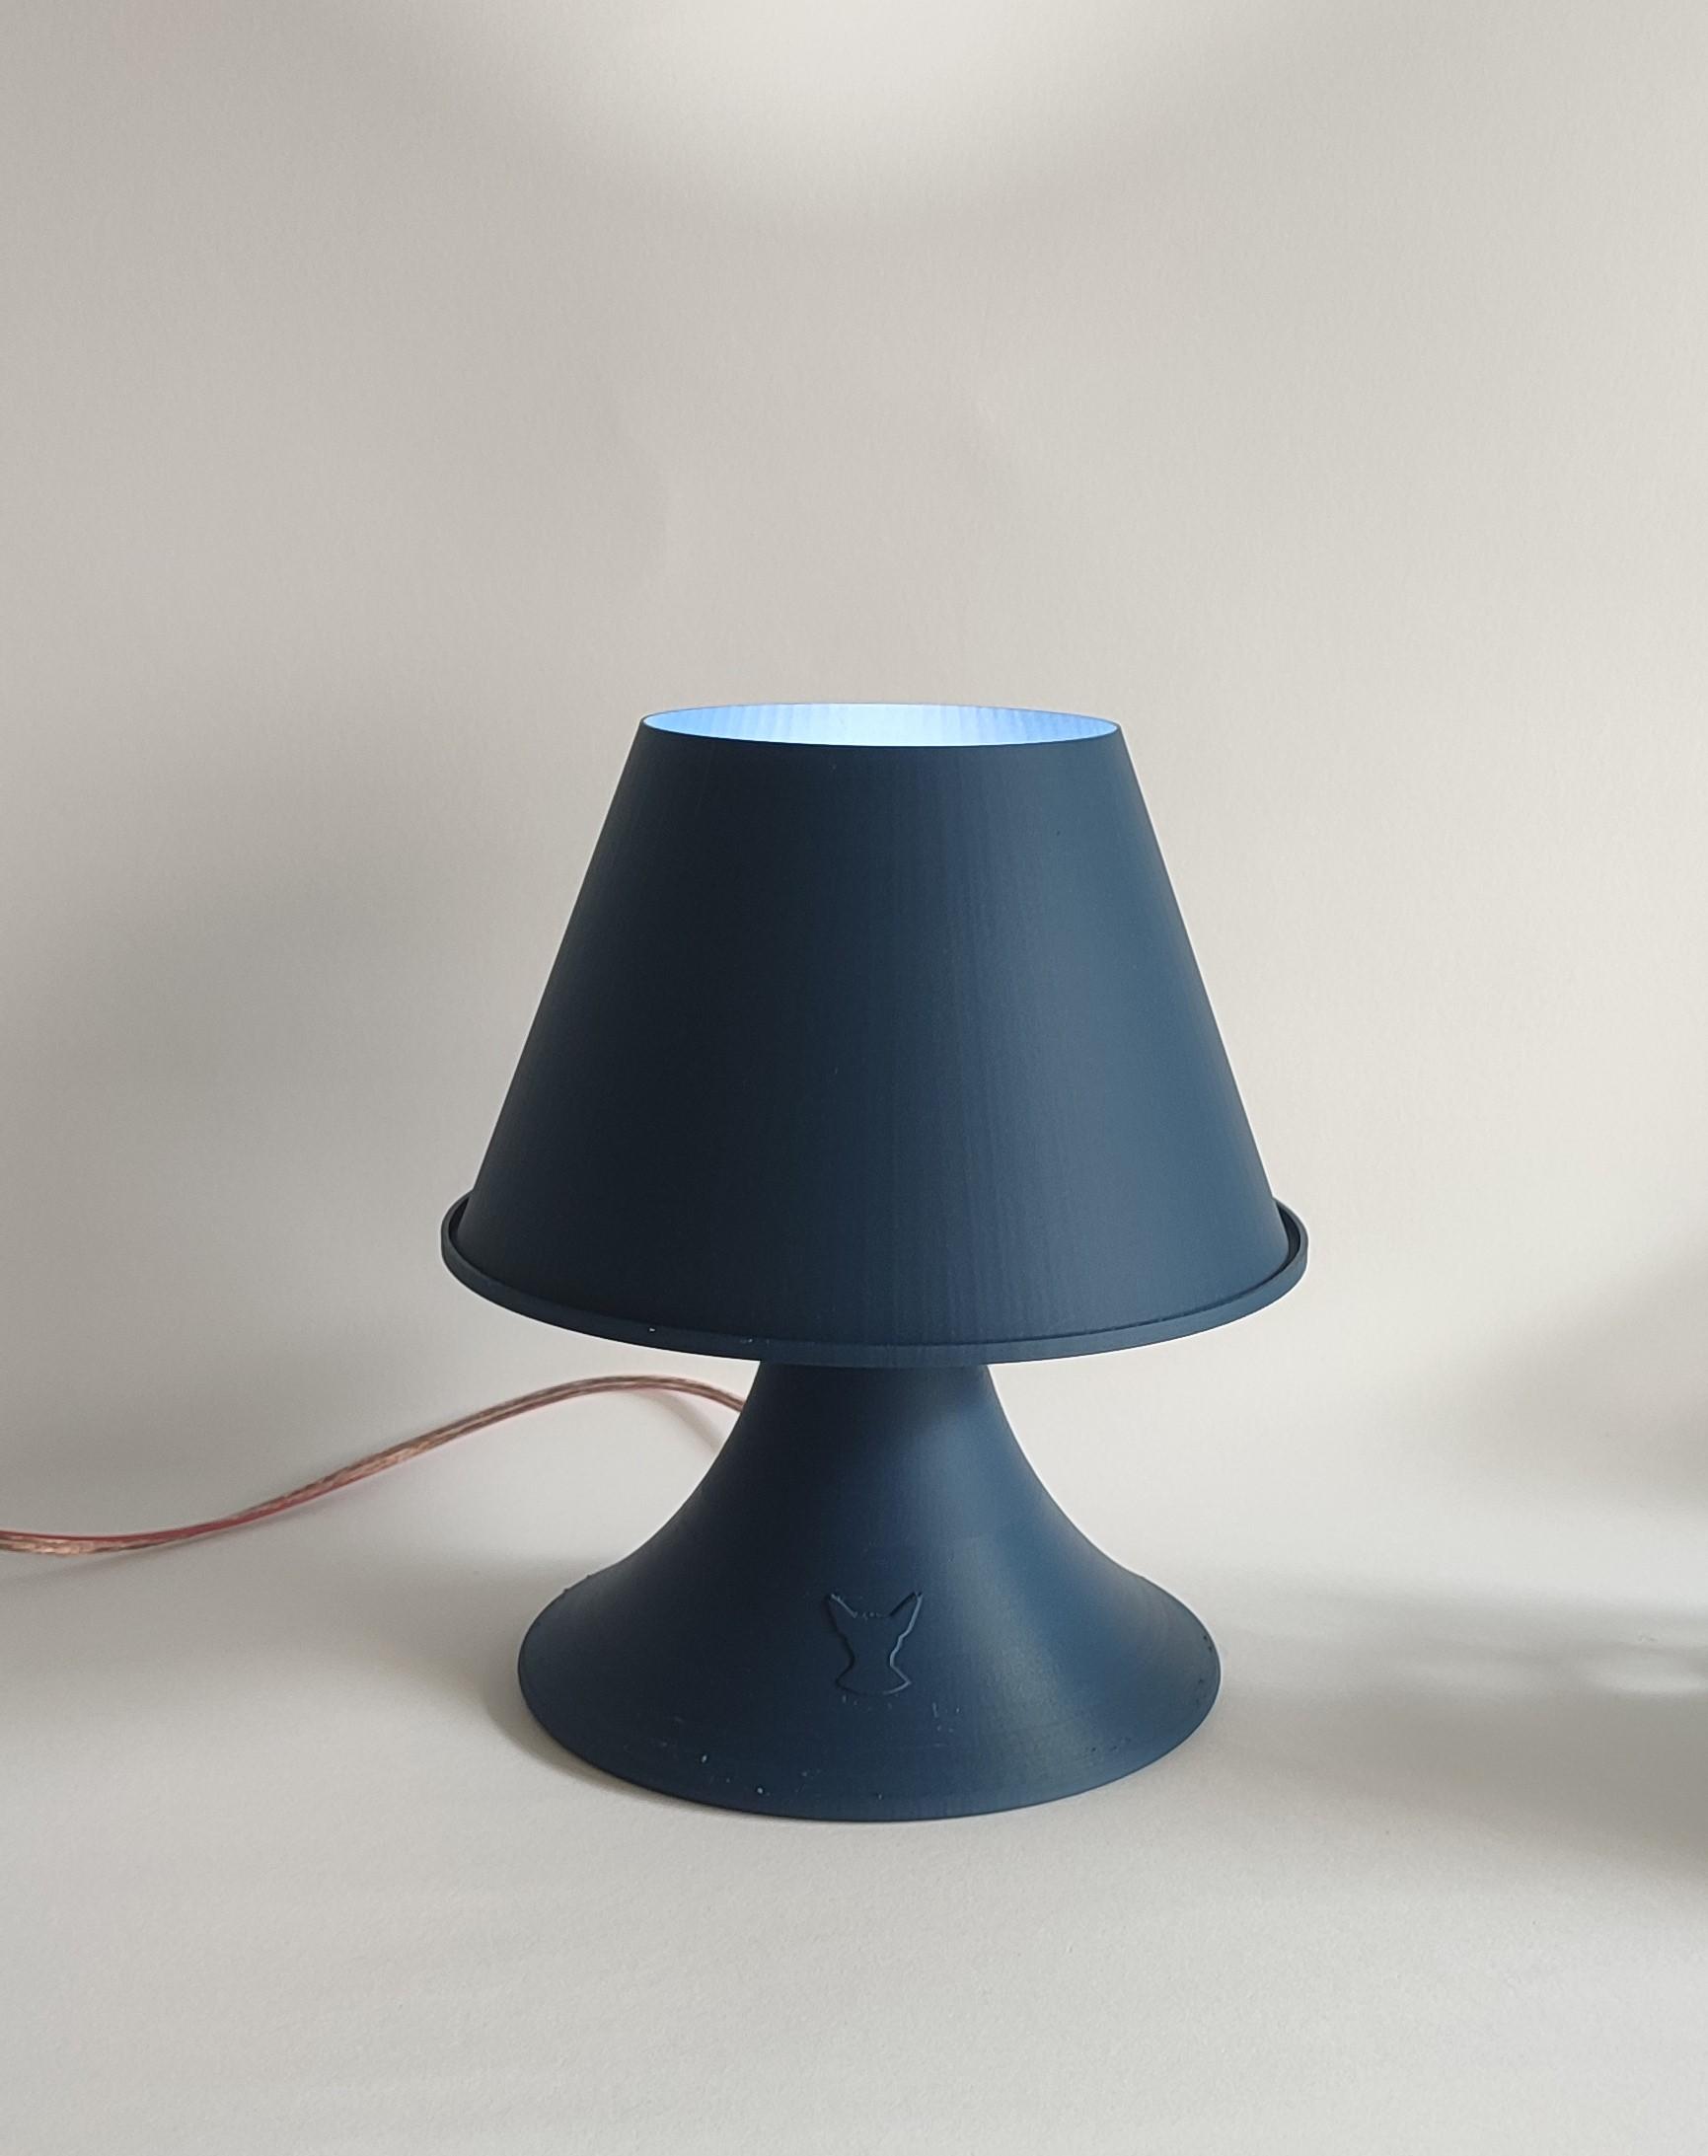 VORONOI TABLE LAMP 3d model